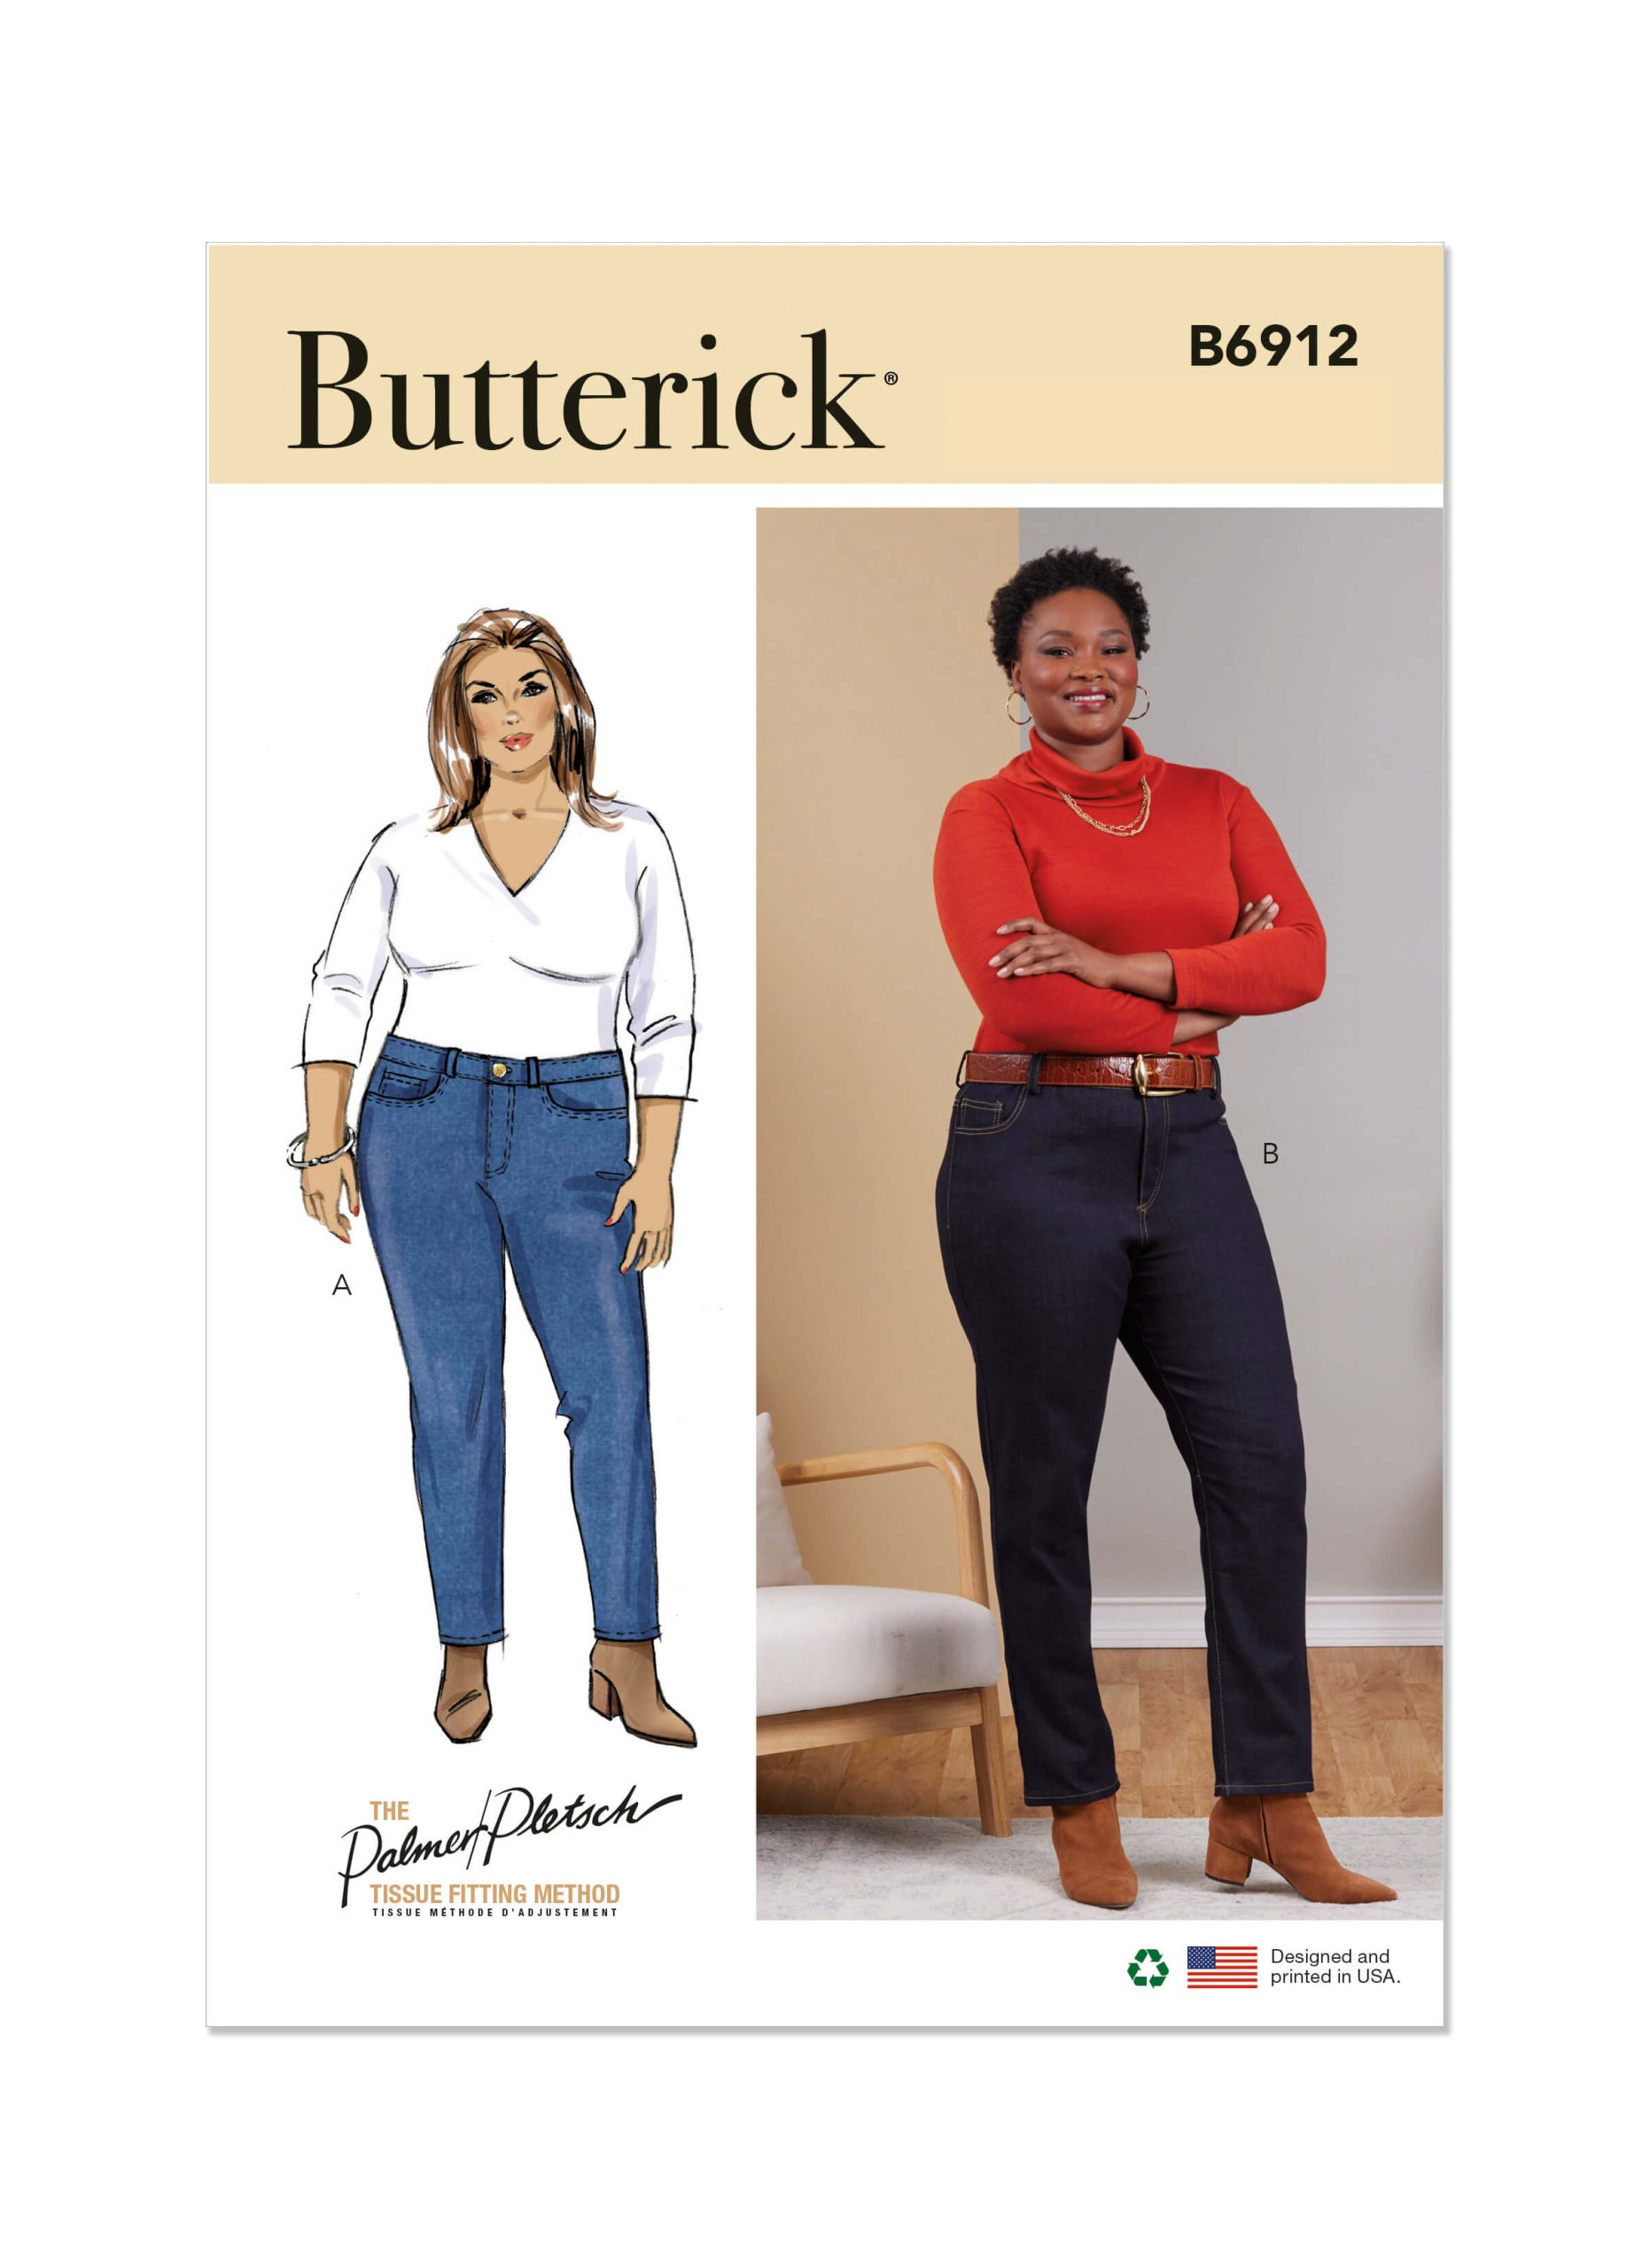 Butterick Sewing Pattern B6912 Women's Jeans by Palmer/Pletsch